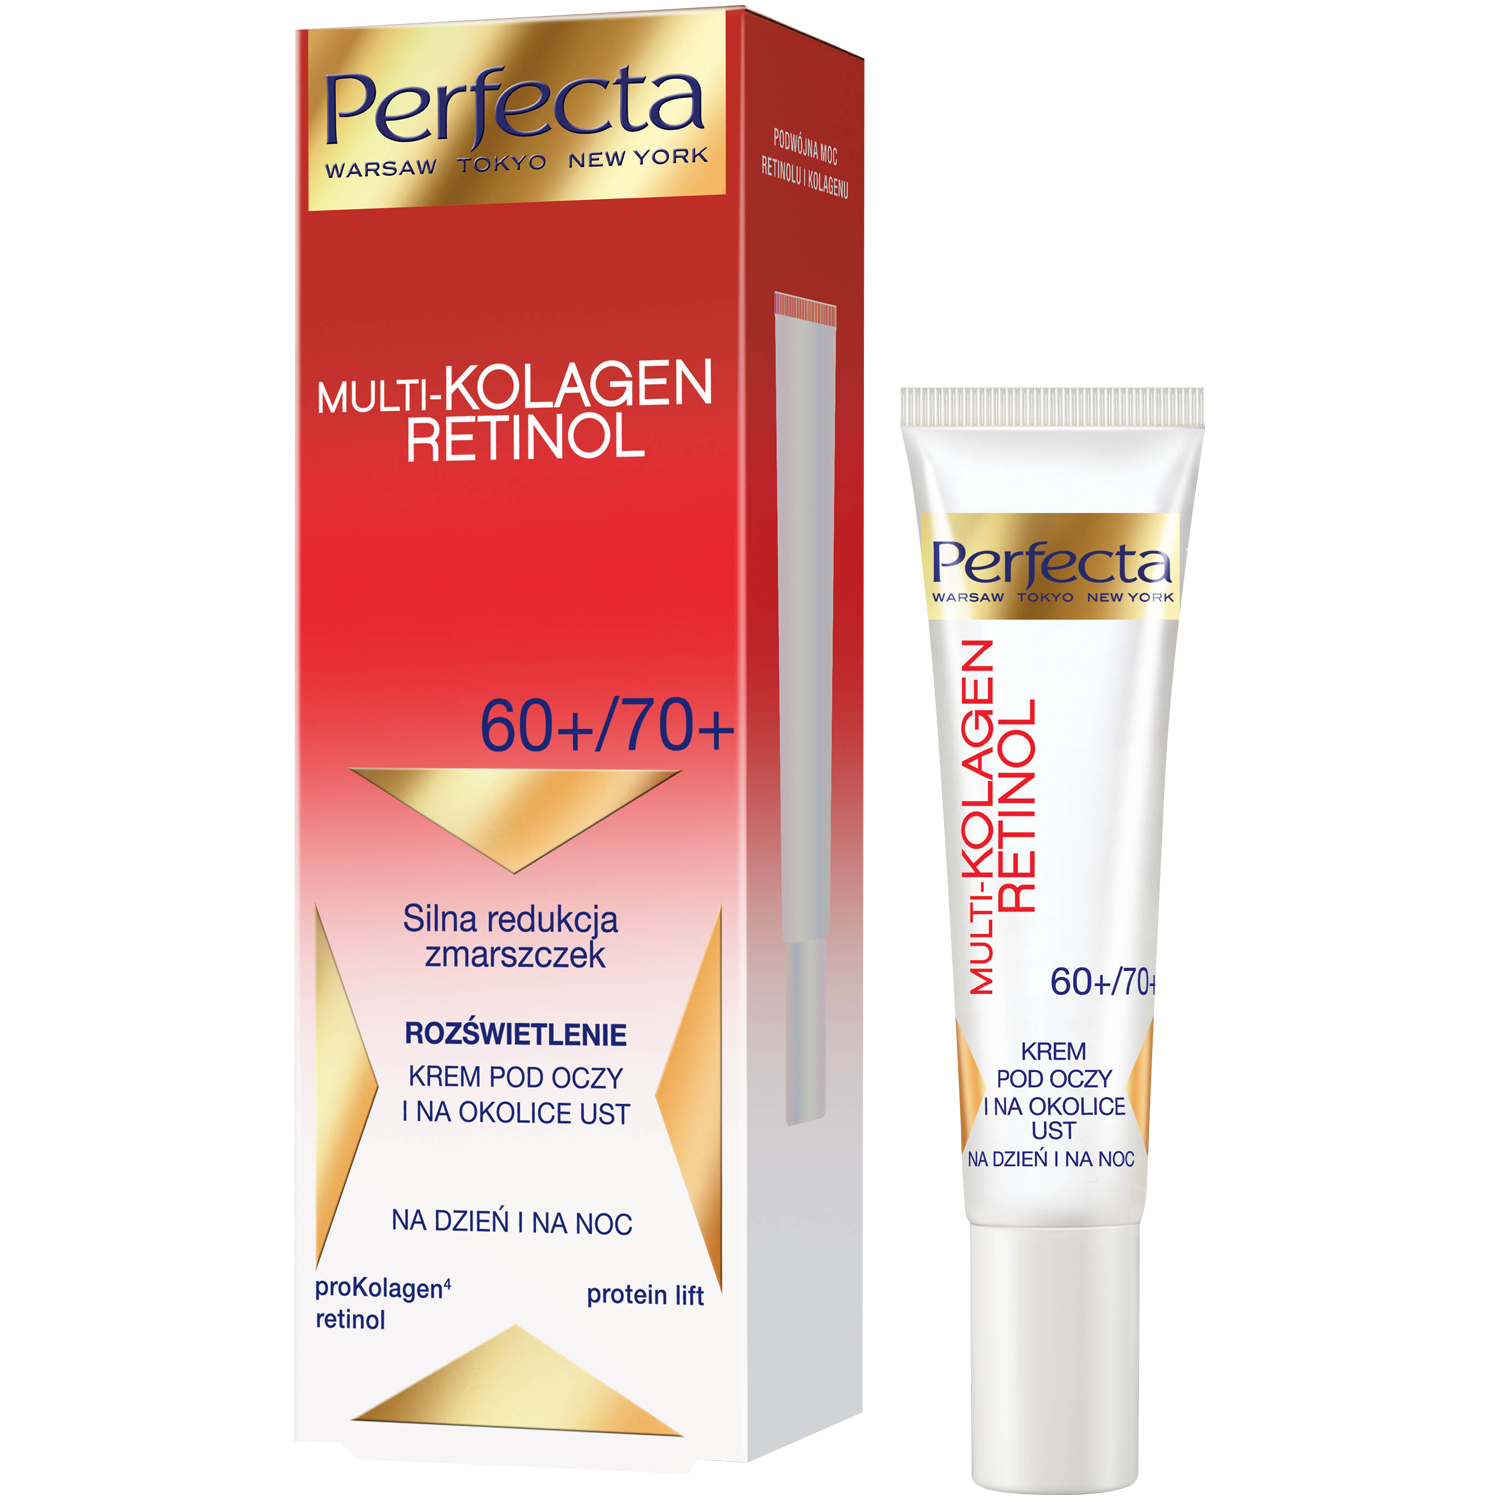 Perfecta Multikolagen Retinol мультиколлагеновый крем для глаз и рта 60+/70+, 15 мл